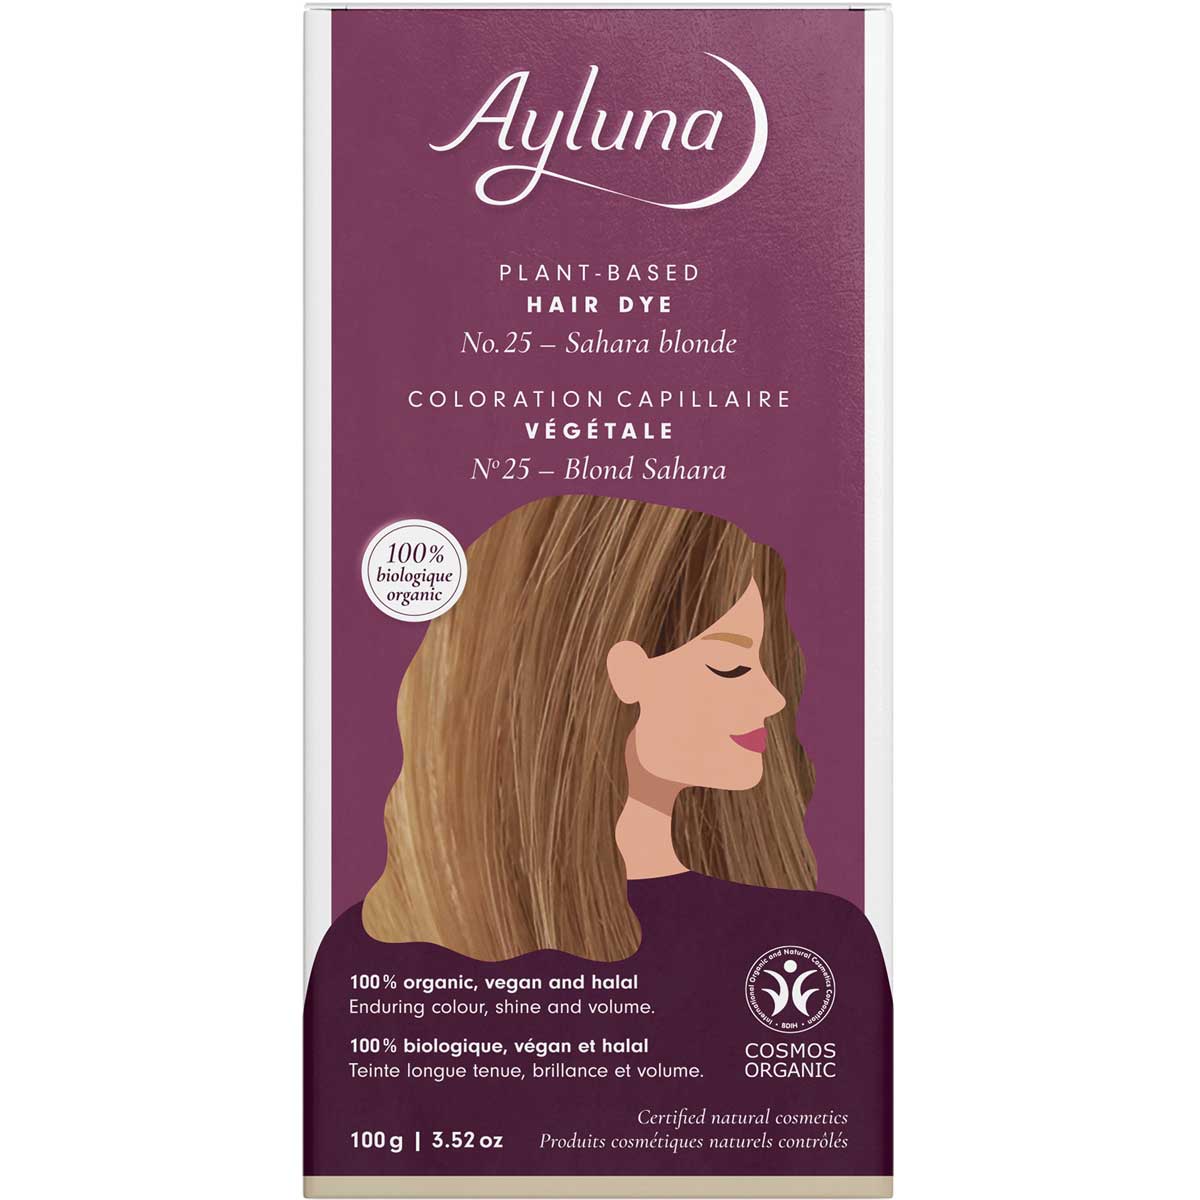 Ayluna Sahara Blonde No.25 Plant-Based Hair Dye 100g